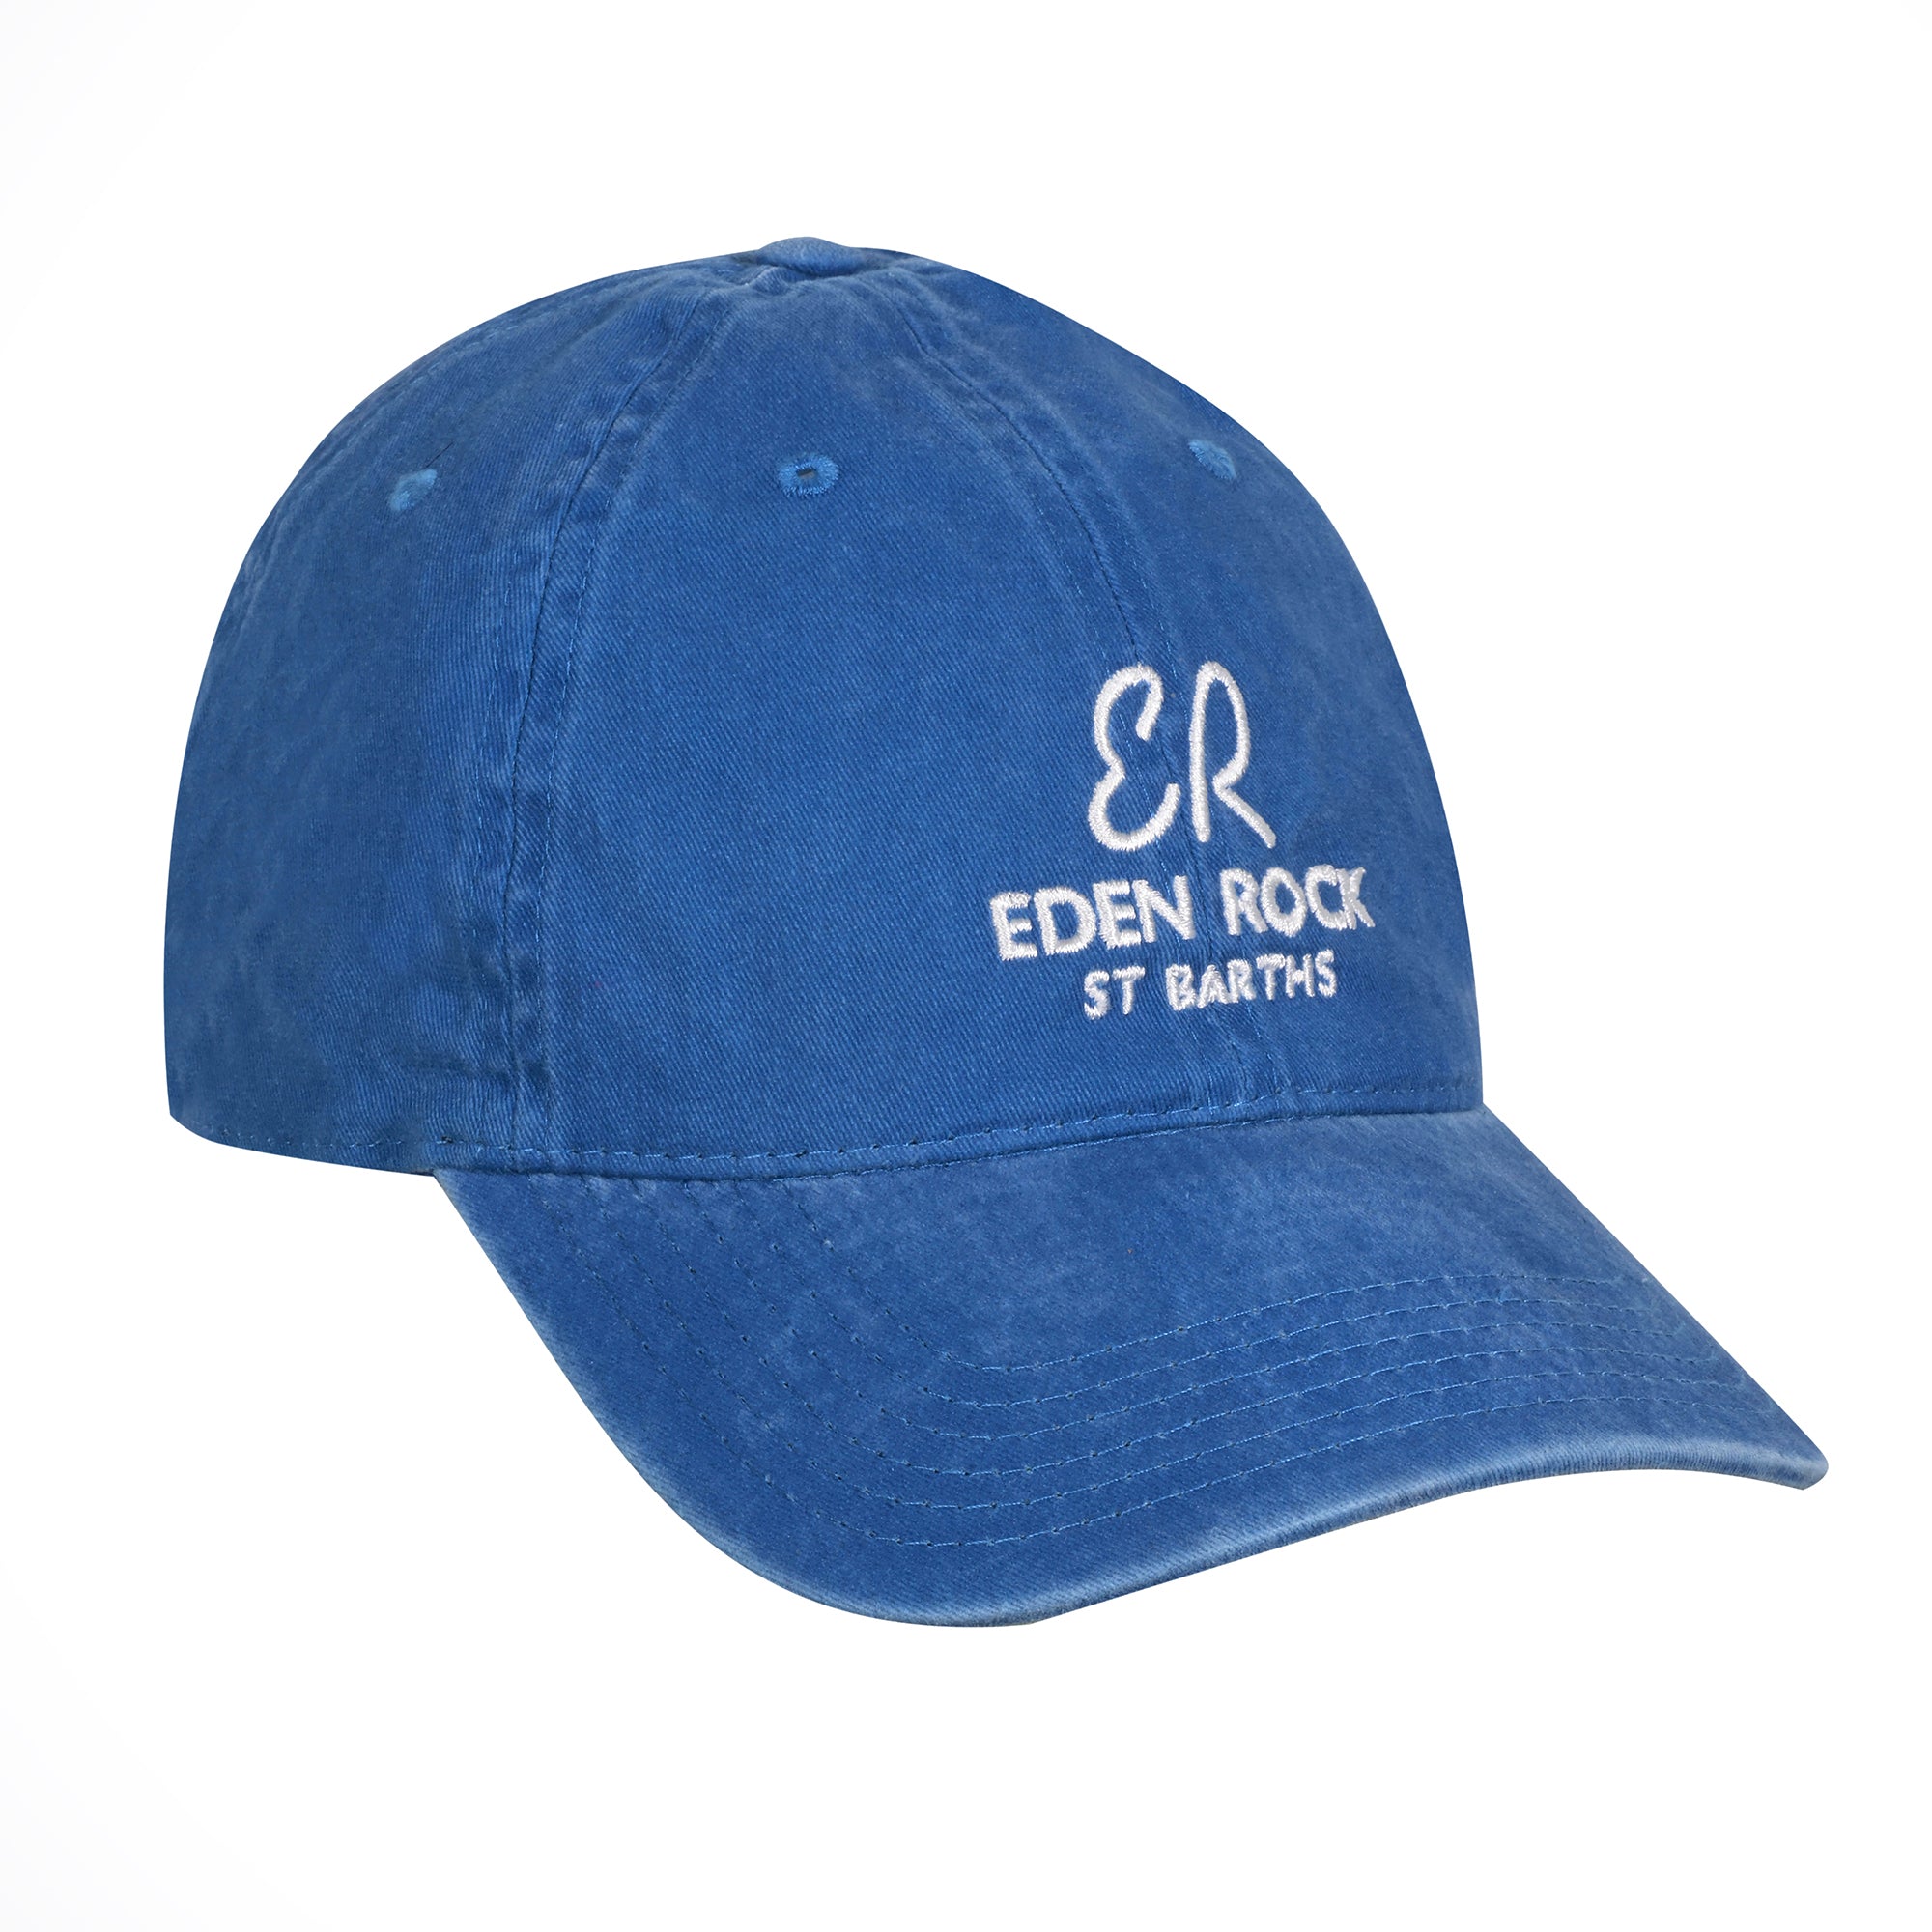 Eden Rock - St Barths Cap Baseball